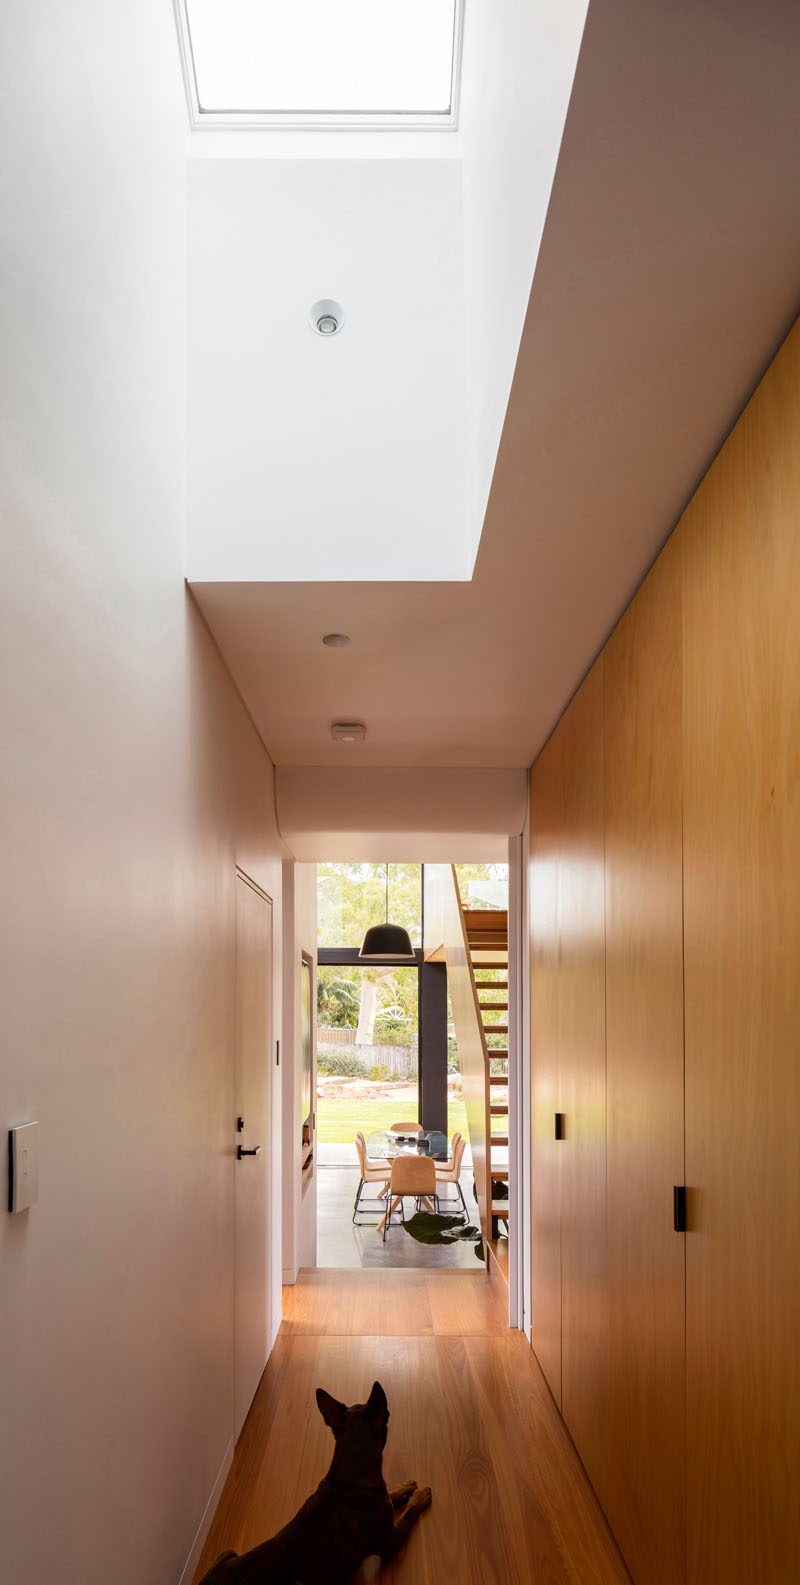 В этом Дом коридор с деревянными шкафами, ведущий к новой пристройке, потолочное окно естественный свет в интерьер. # Прихожая # ИнтерьерДизайн # Свет в крыше 